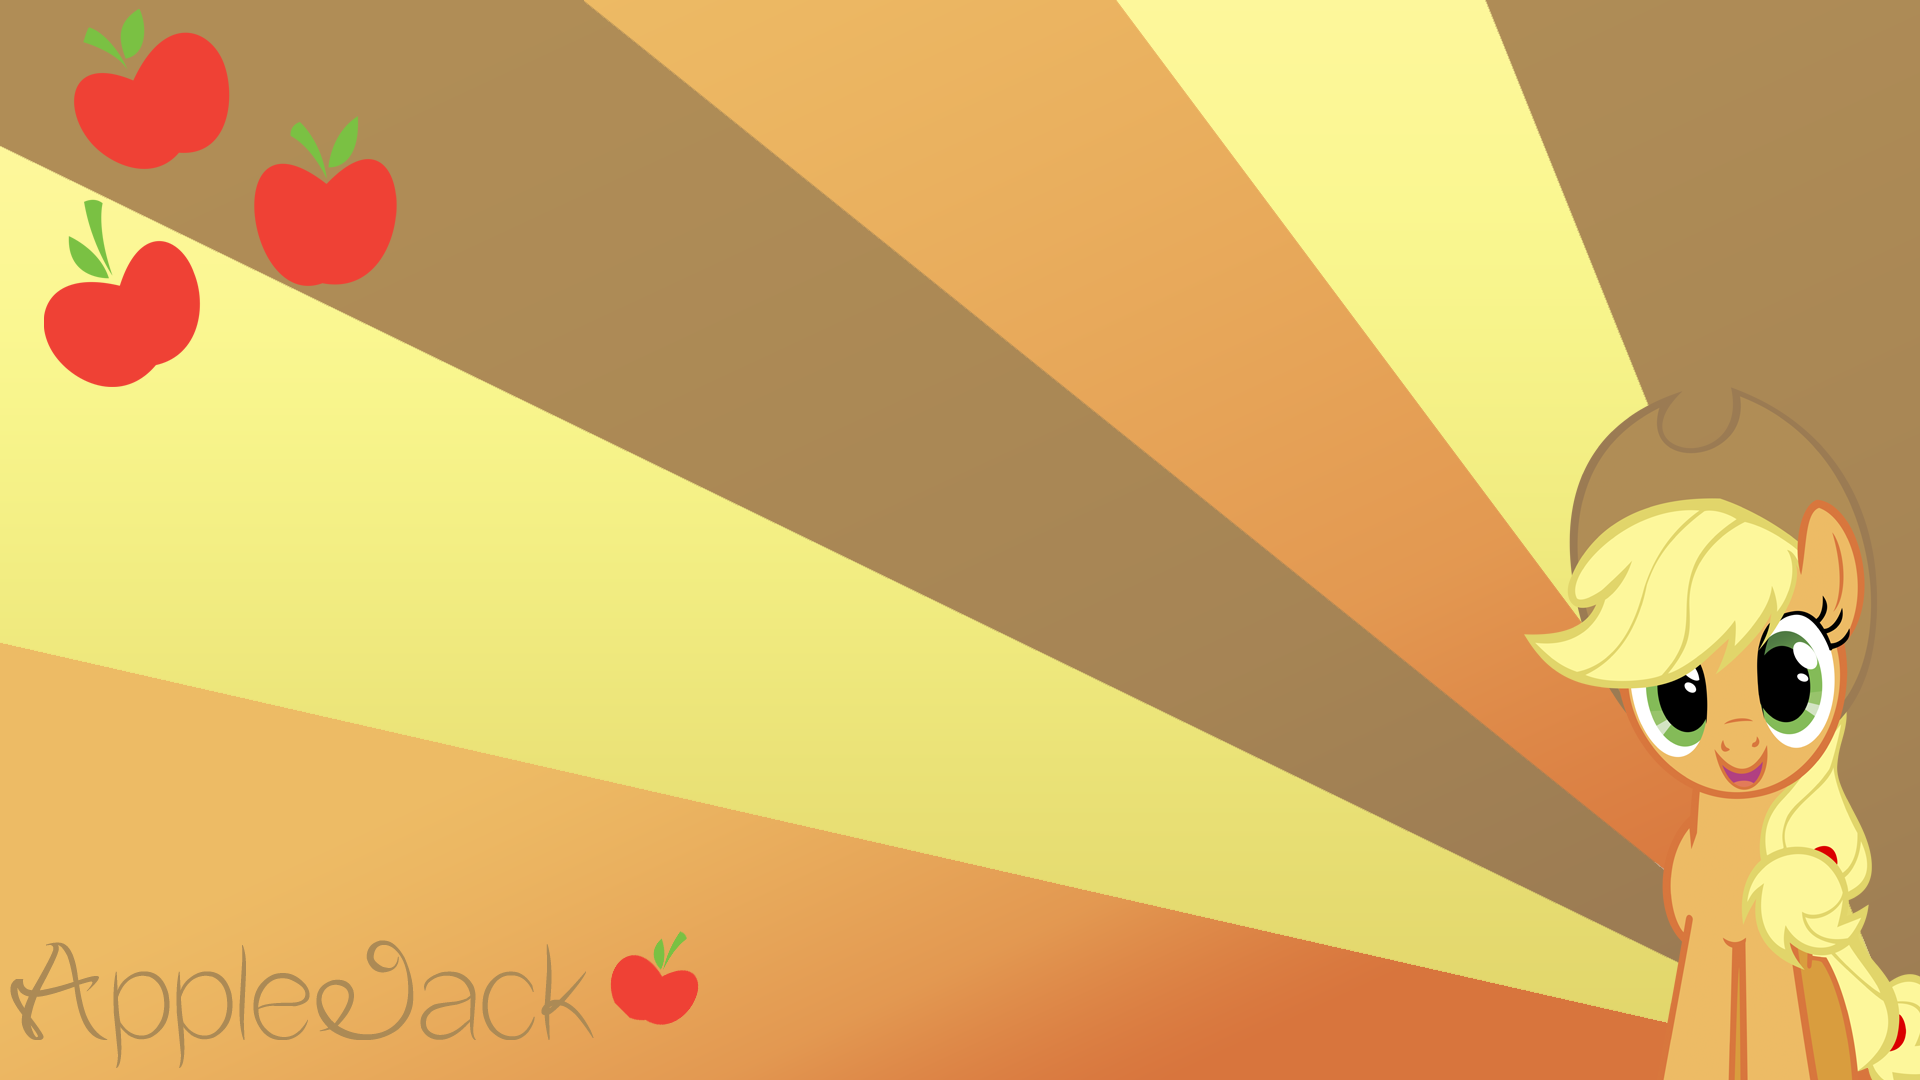 AppleJack Wallpaper by BlackGryph0n, BlueDragonHans and kitsuneymg